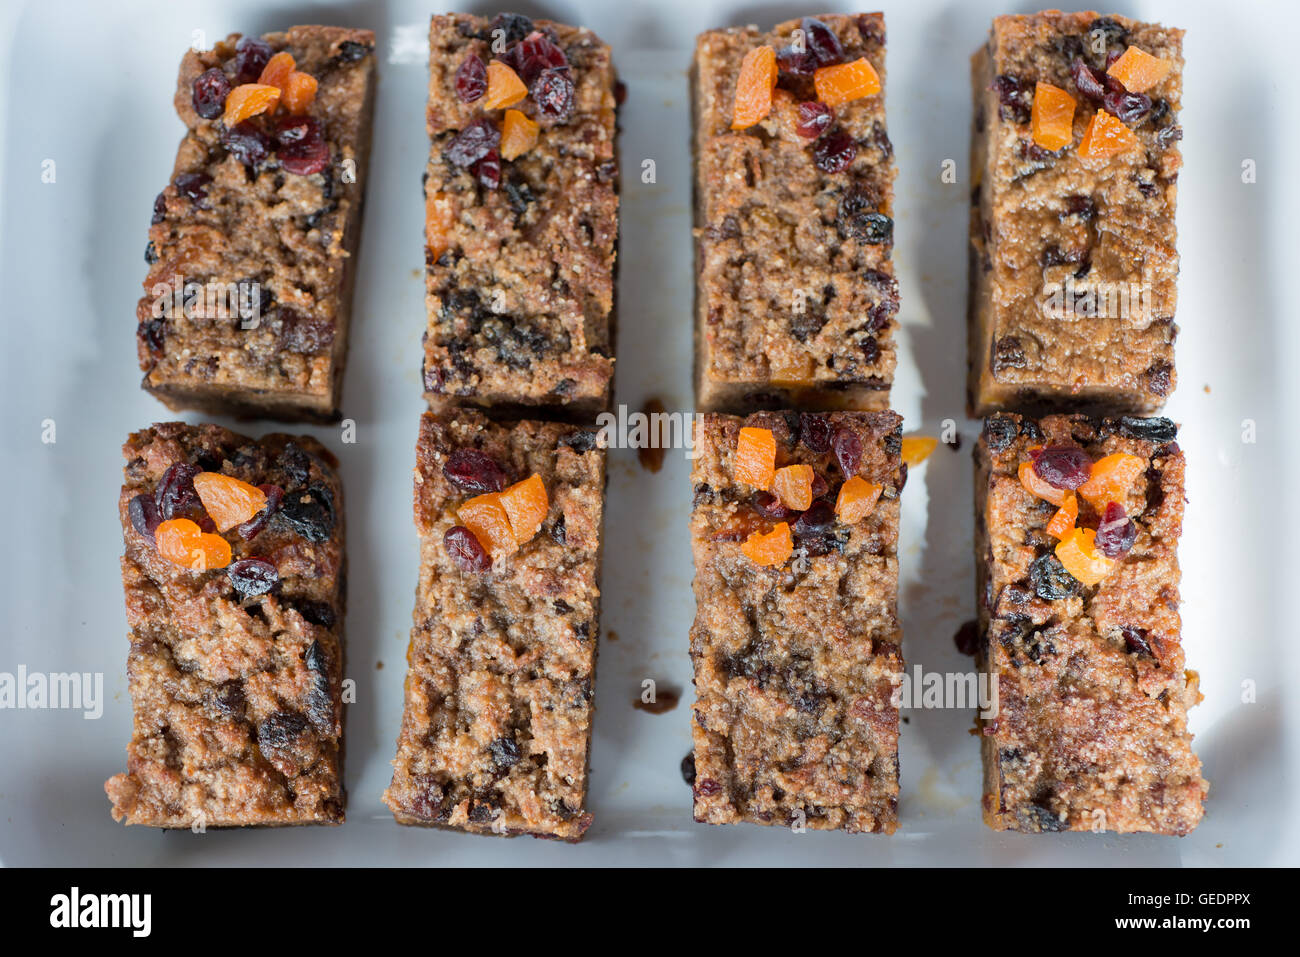 Une maison saine fait snack-de six fruits secs, l'avoine, les barres granola avec des morceaux d'abricot, de raisin sec, de canneberge et de l'avoine grillée Banque D'Images